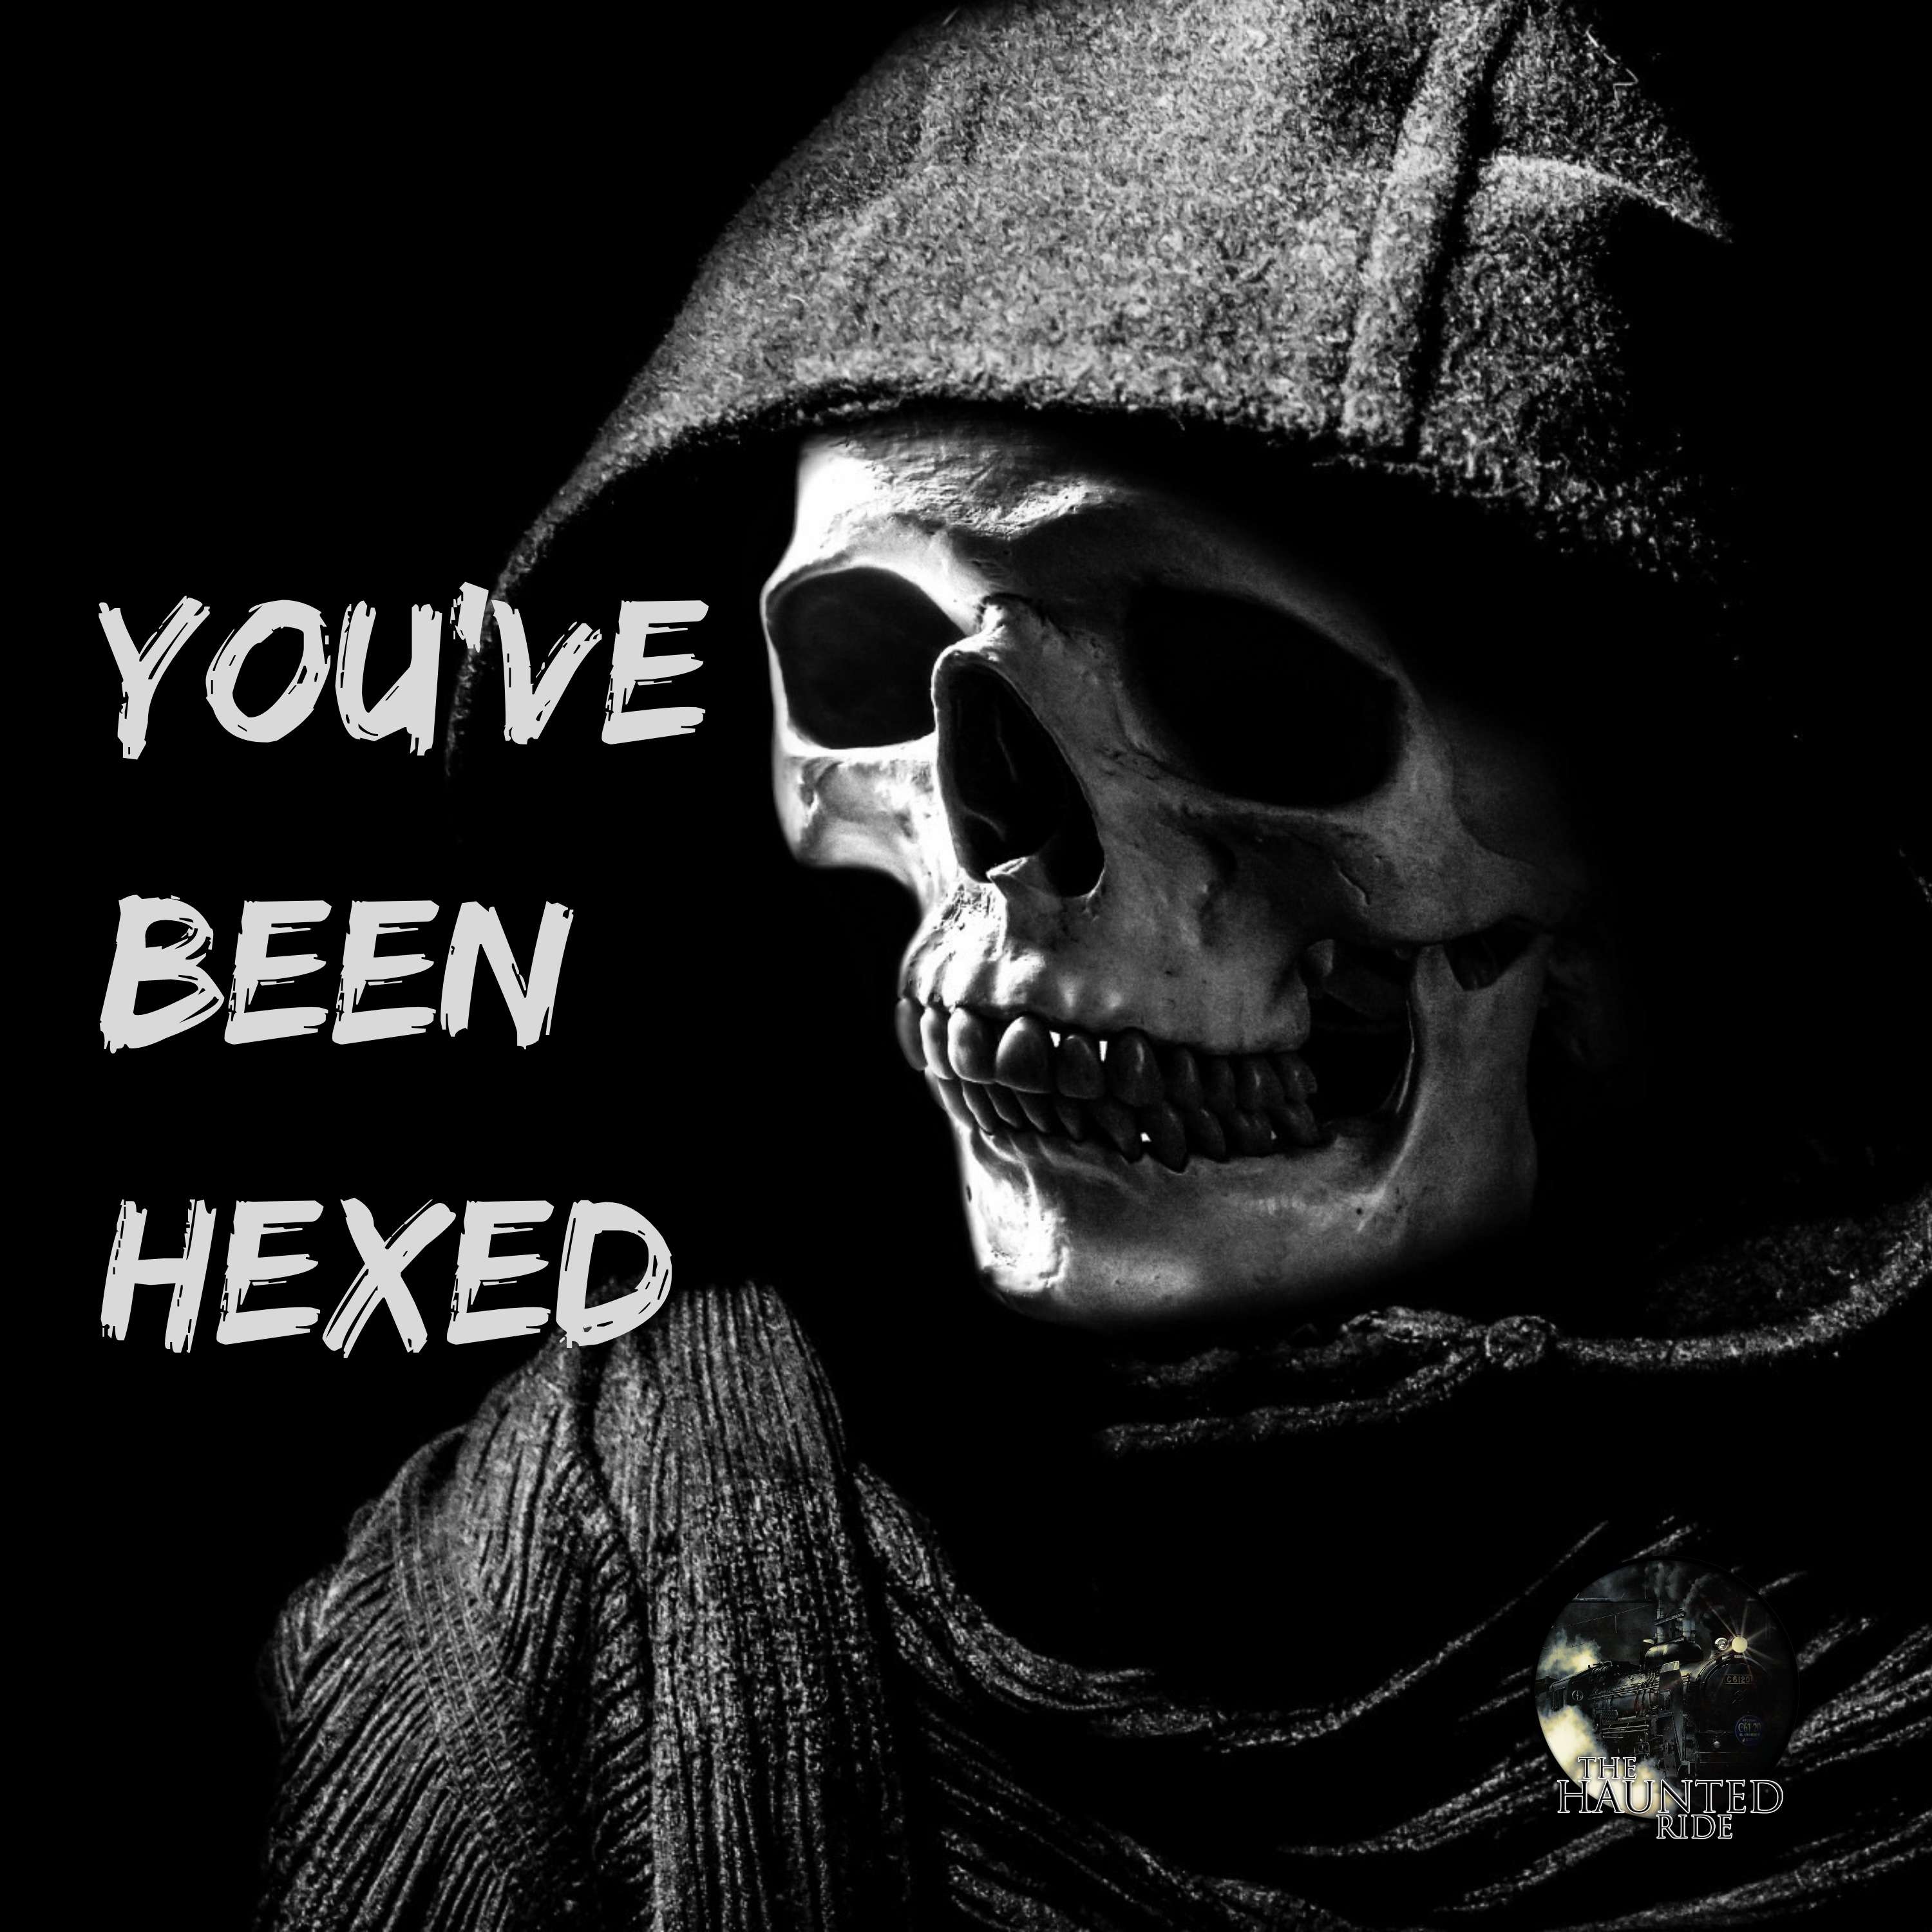 8: You've Been Hexed